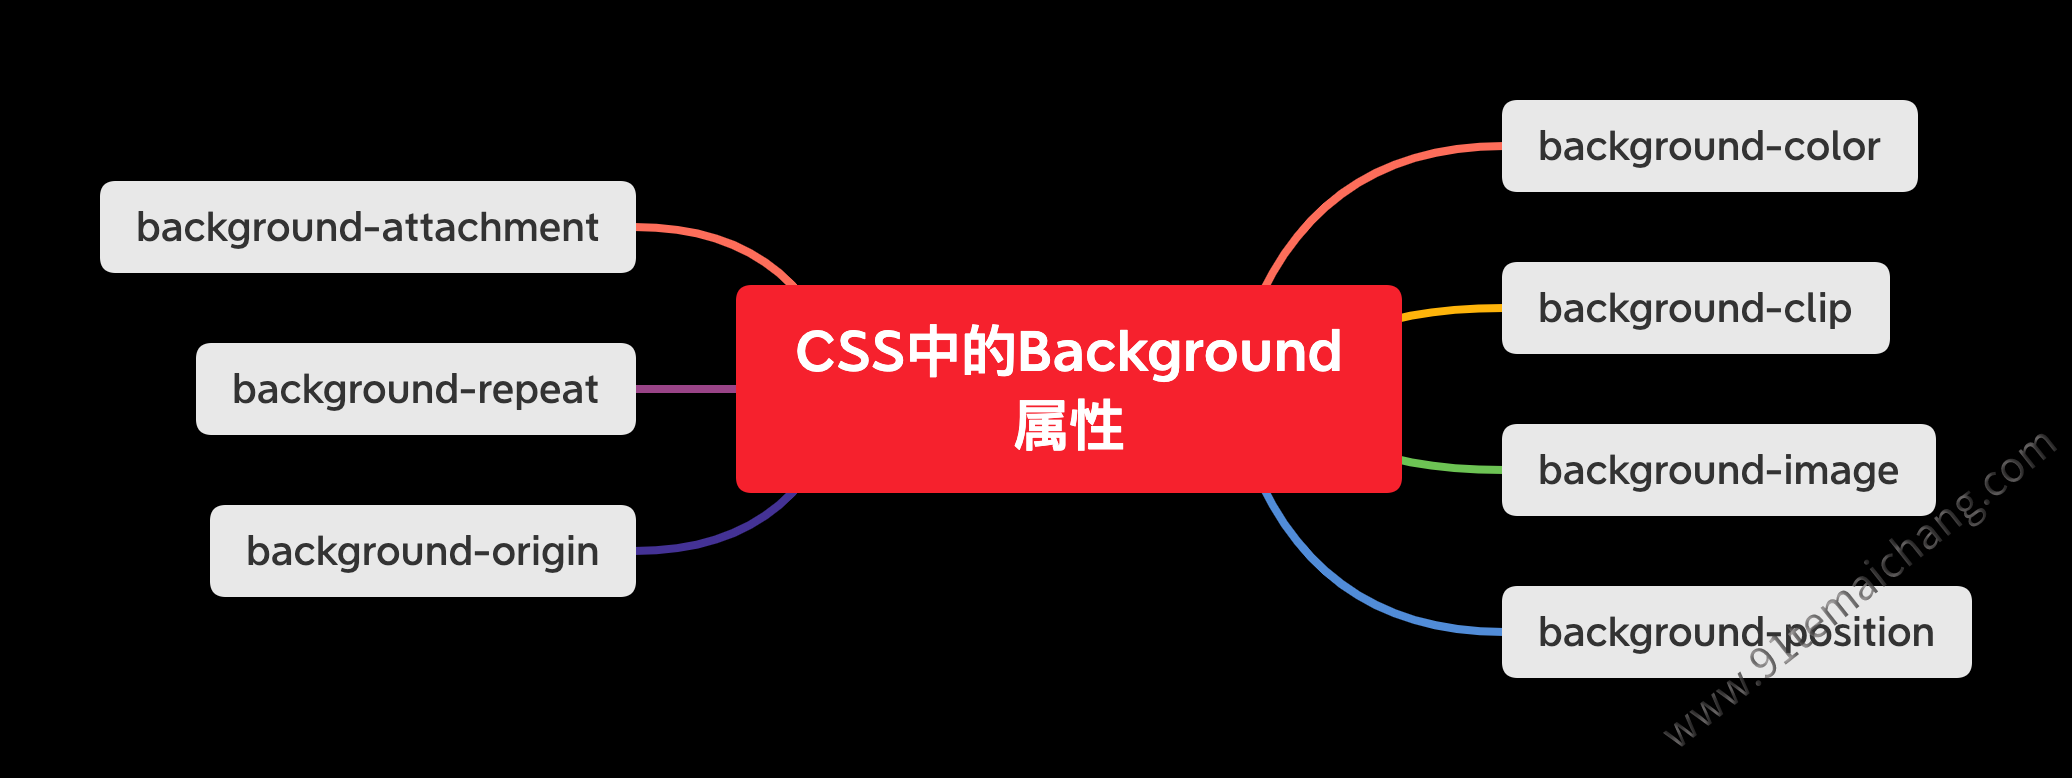 CSS通过拉伸背景图片实现网页背景全覆盖 - 灰信网（软件开发博客聚合）